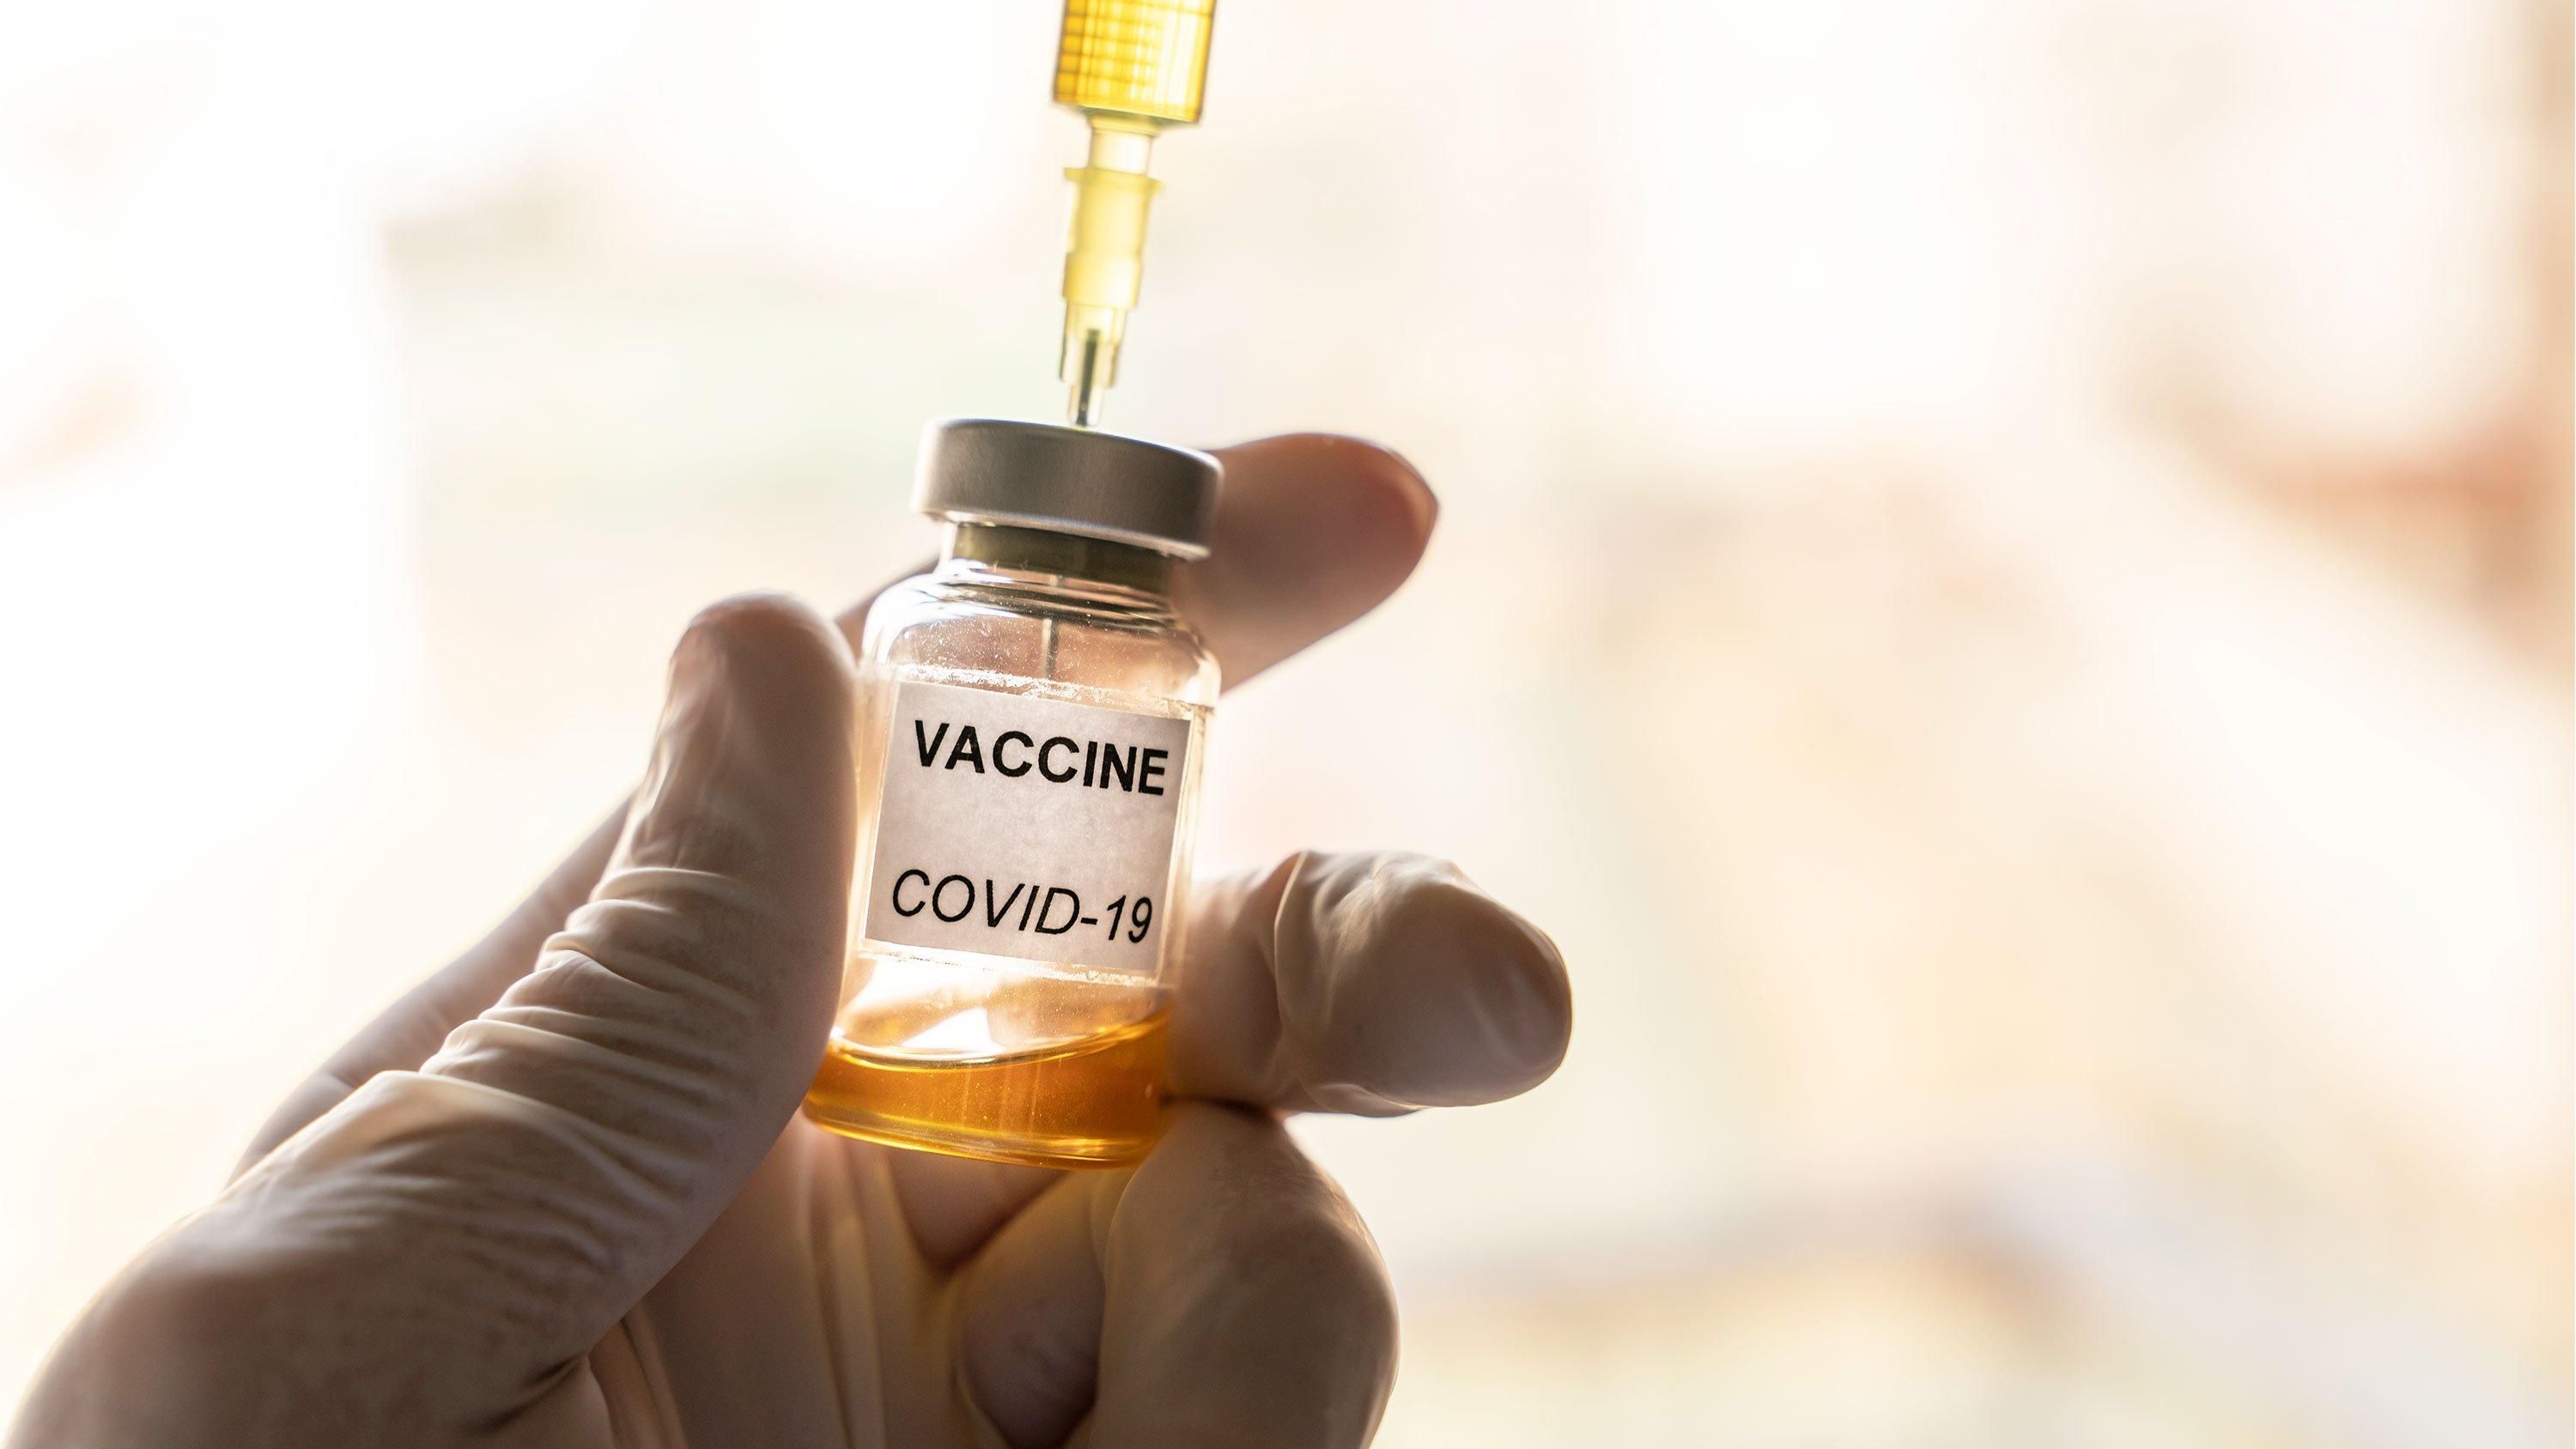 Готовий випробувати її на собі, – Зеленський про українську вакцину проти коронавірусу